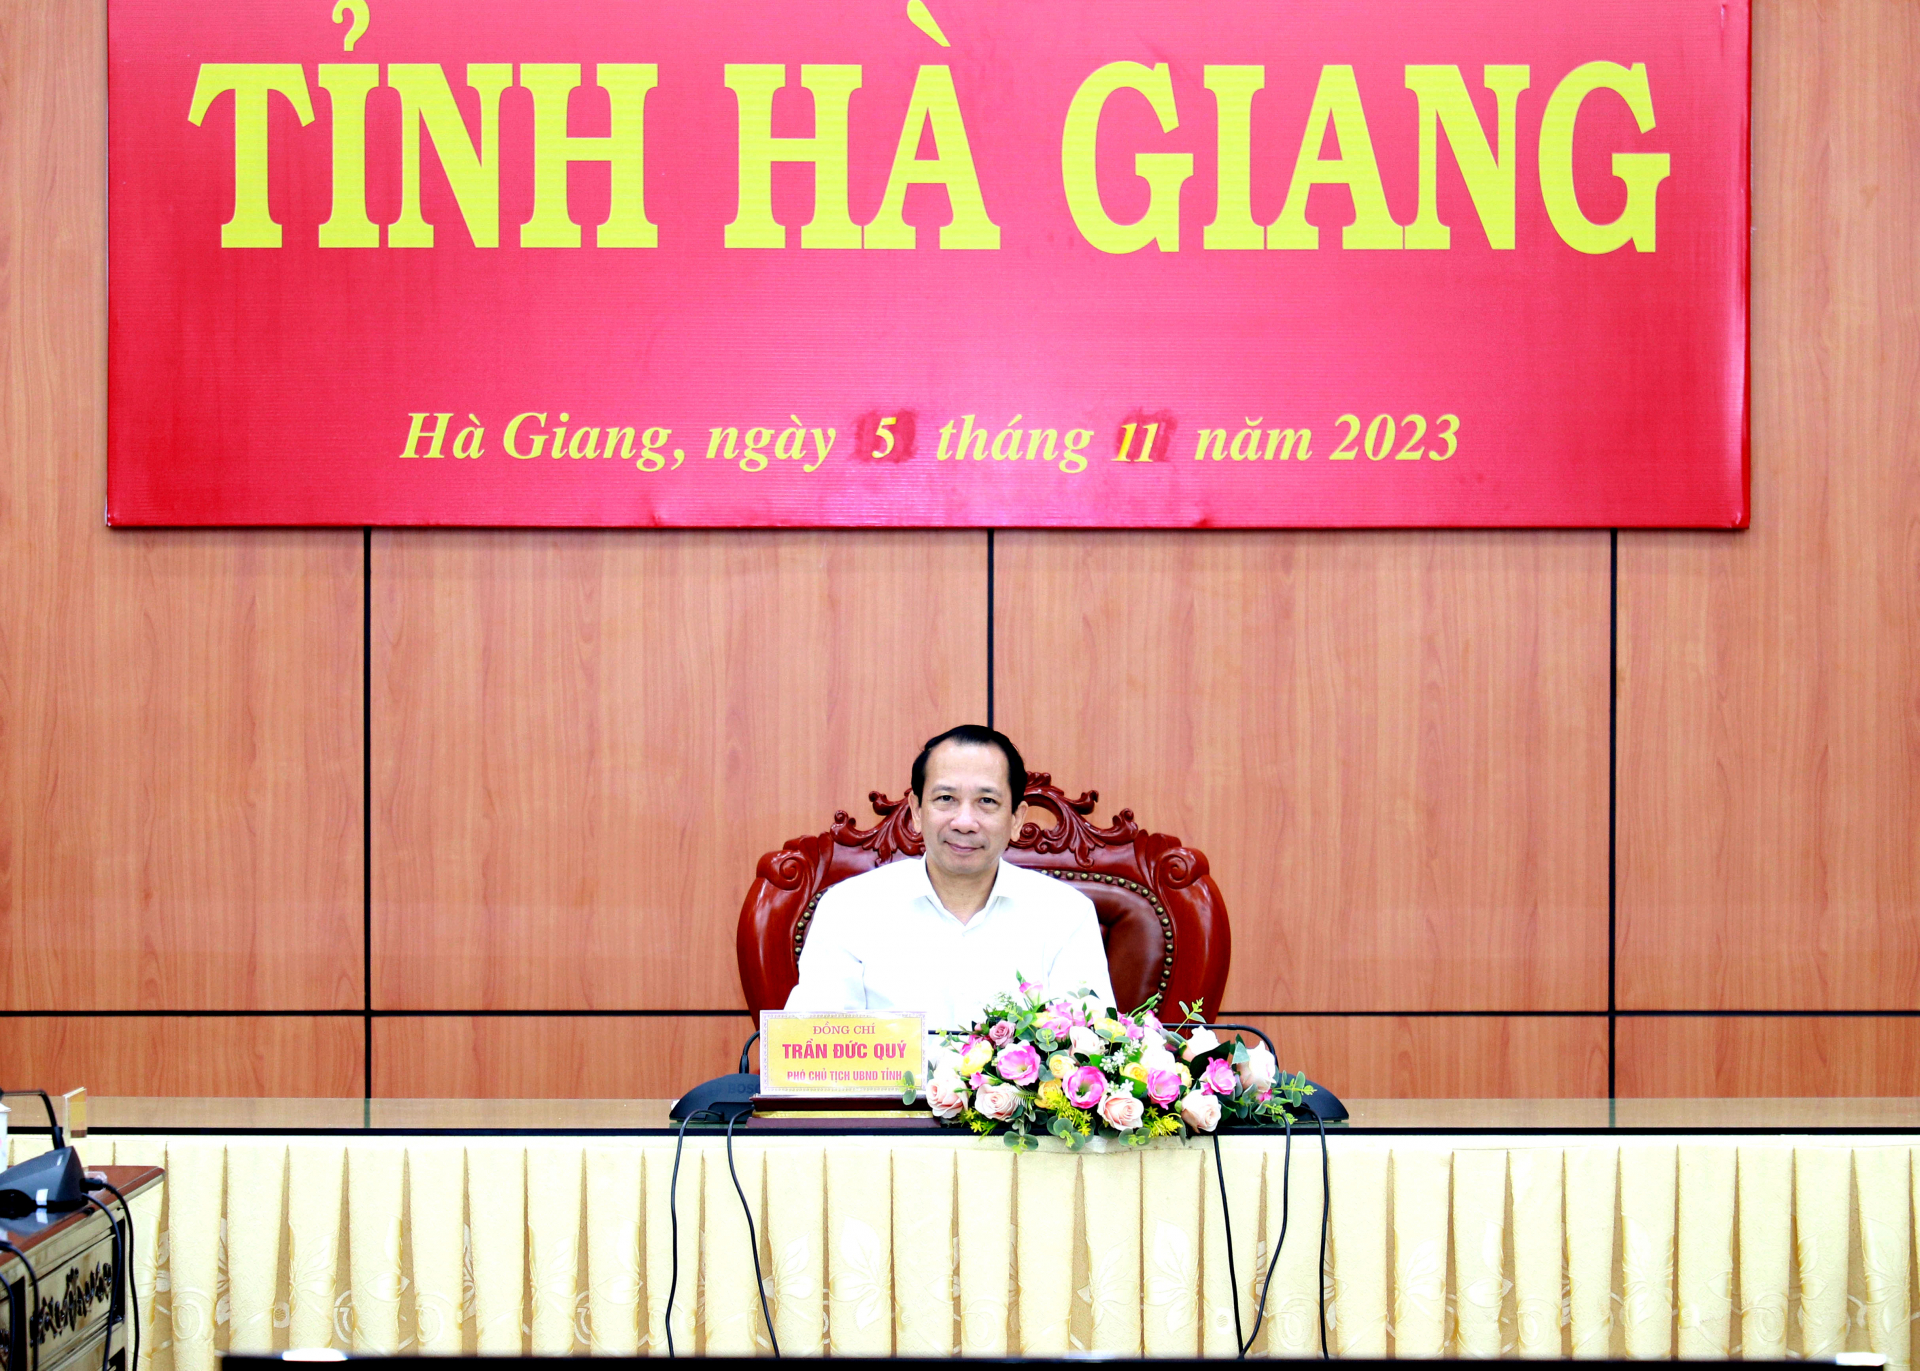 Phó Chủ tịch UBND tỉnh Trần Đức Quý chủ trì hội nghị tại điểm cầu của tỉnh.